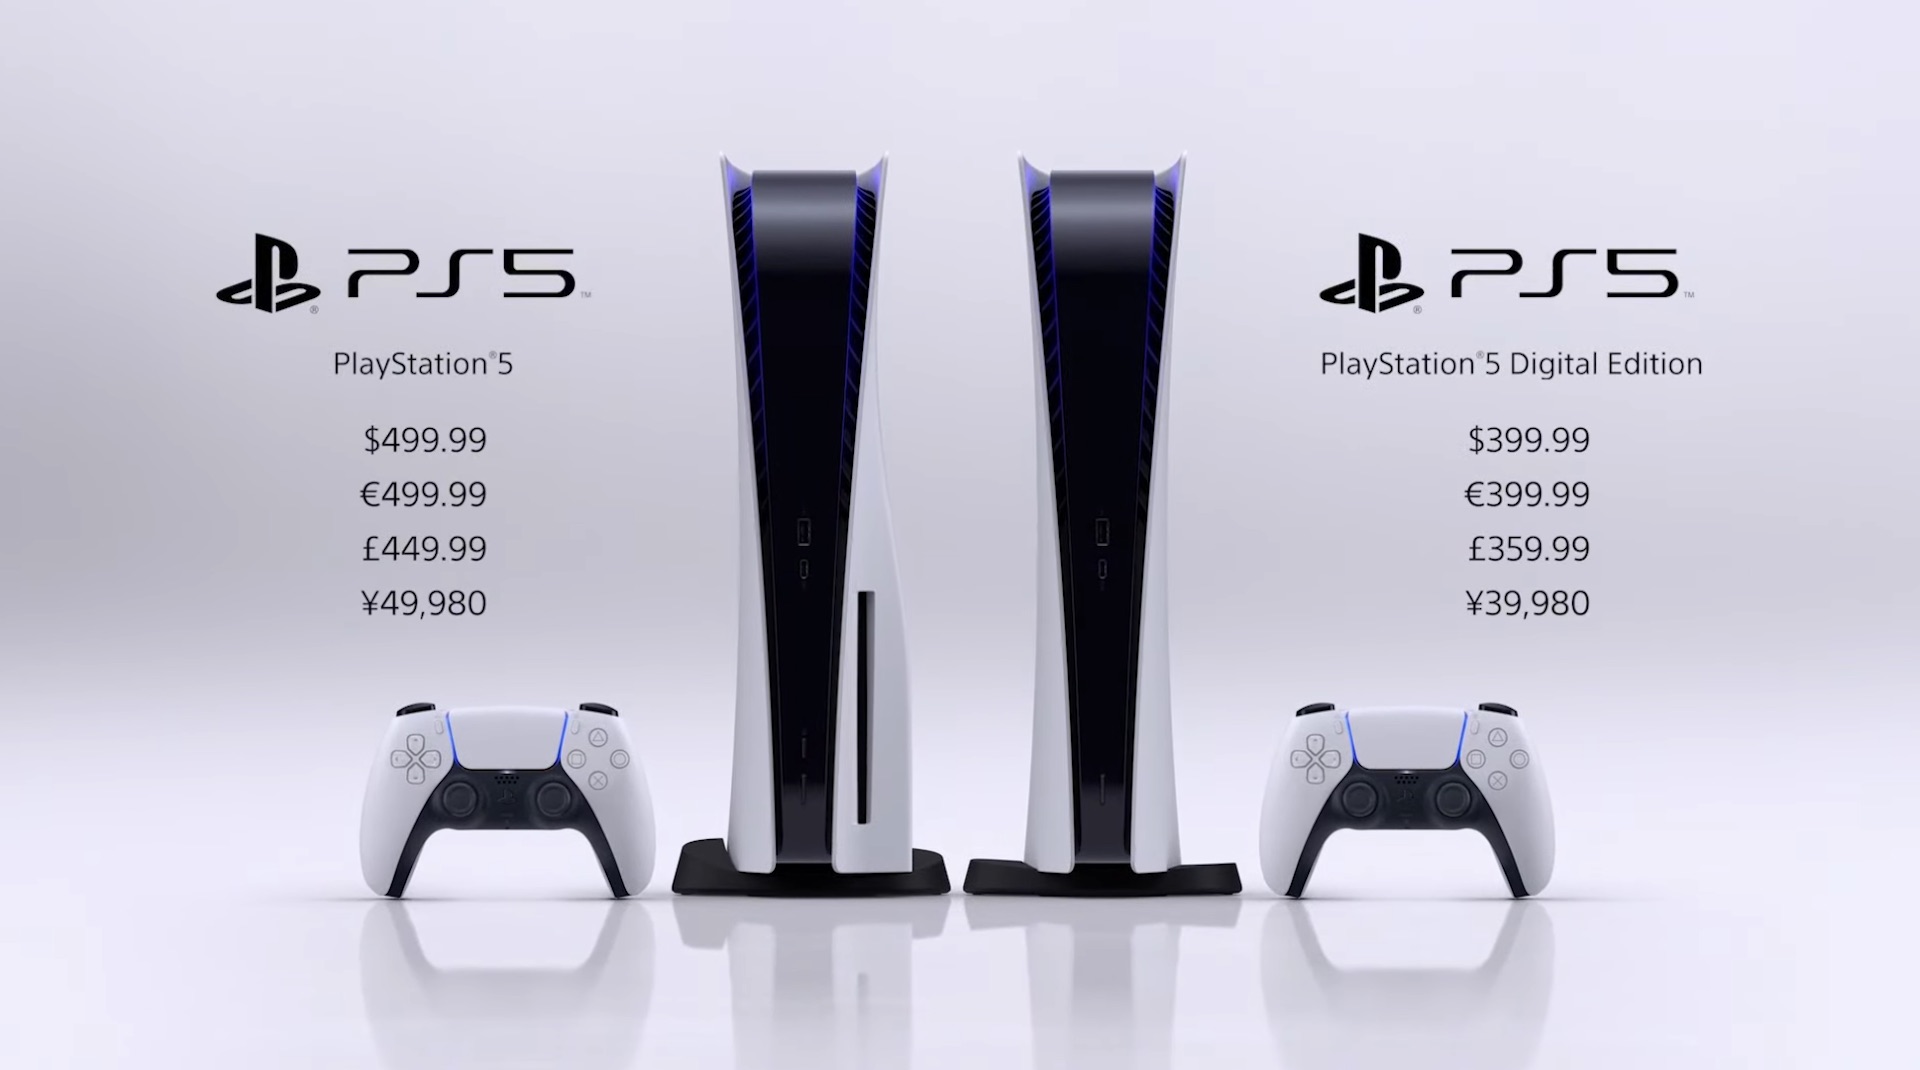 La PS5 sera disponible le 19 novembre en France à partir de 399,99